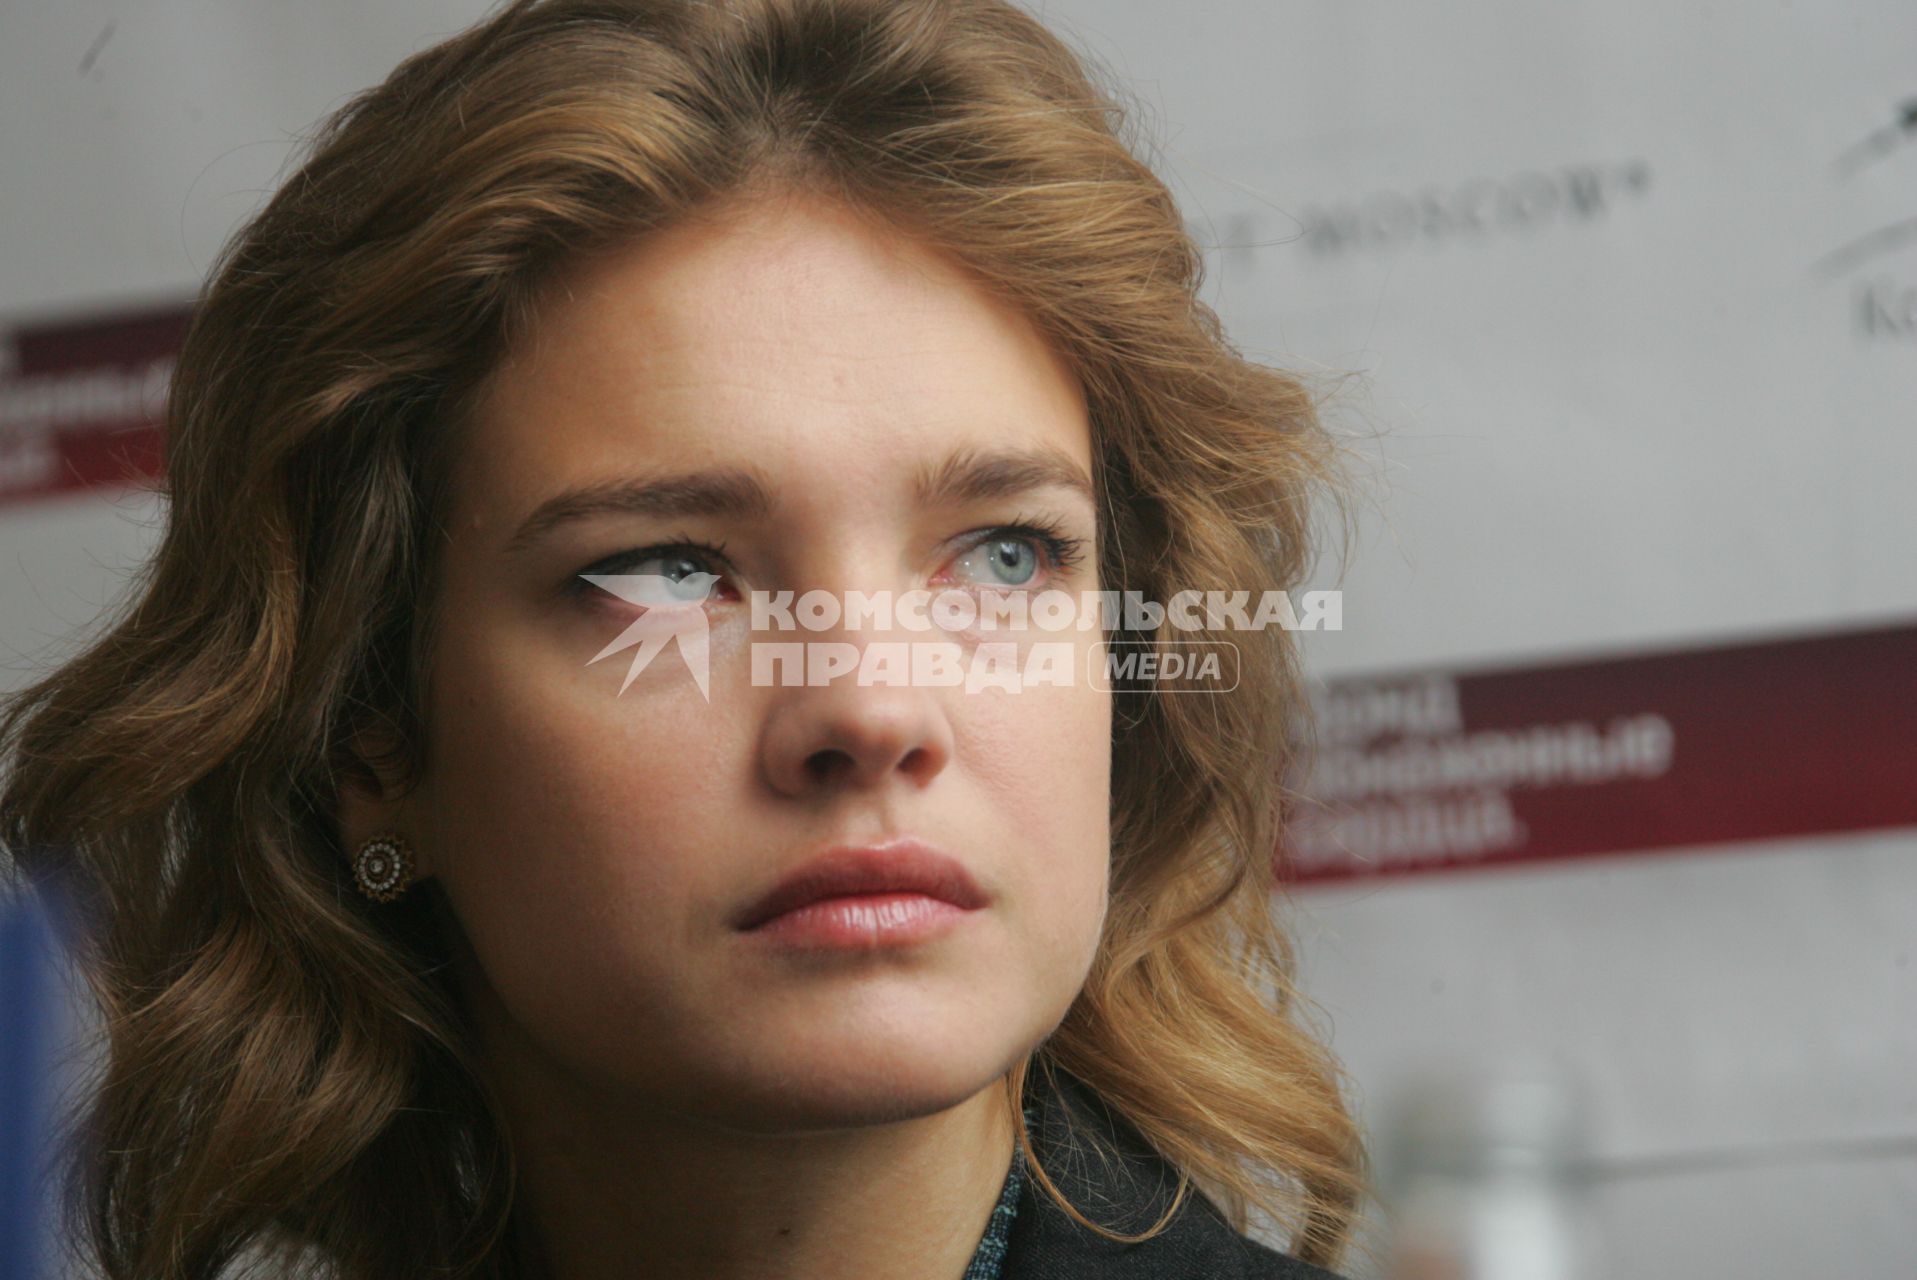 Топ-модель Наталья Водянова.  28 октября 2011 года.